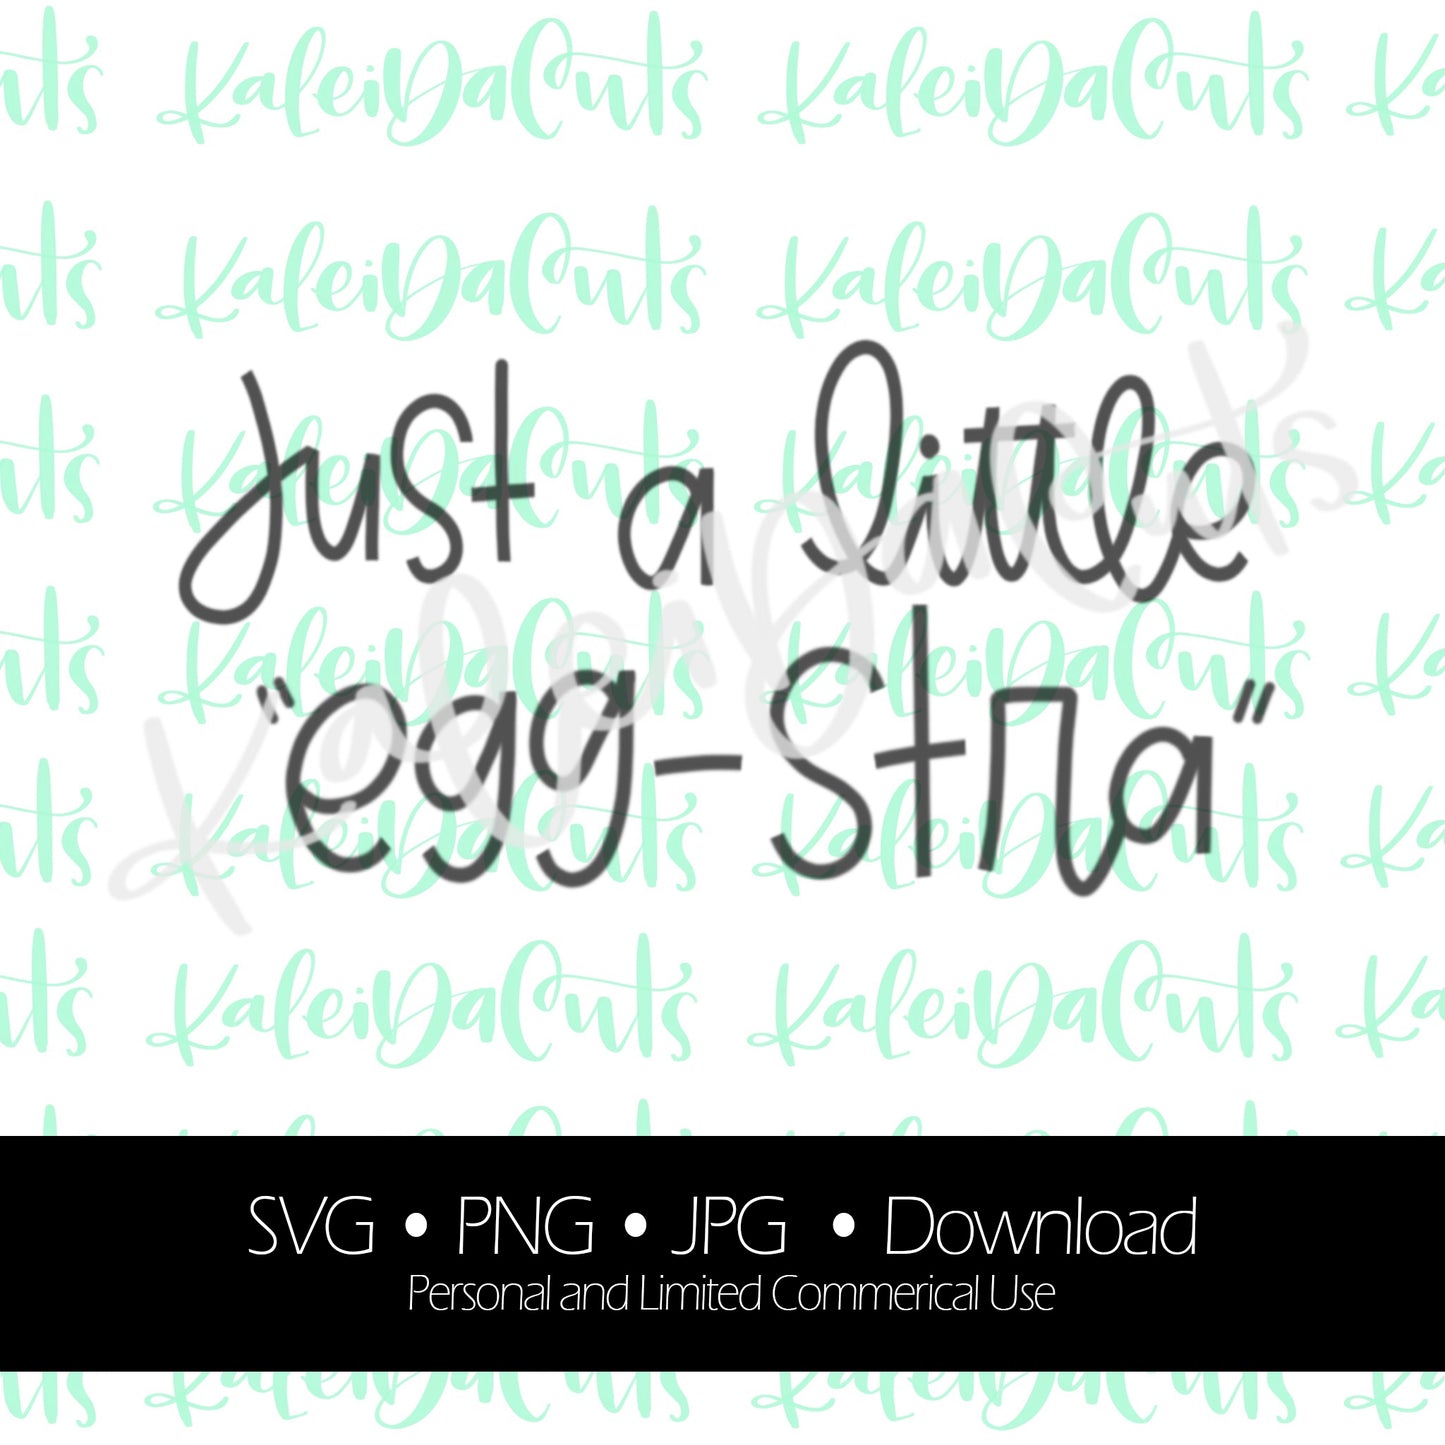 Just a Little Egg-stra Digital Download.